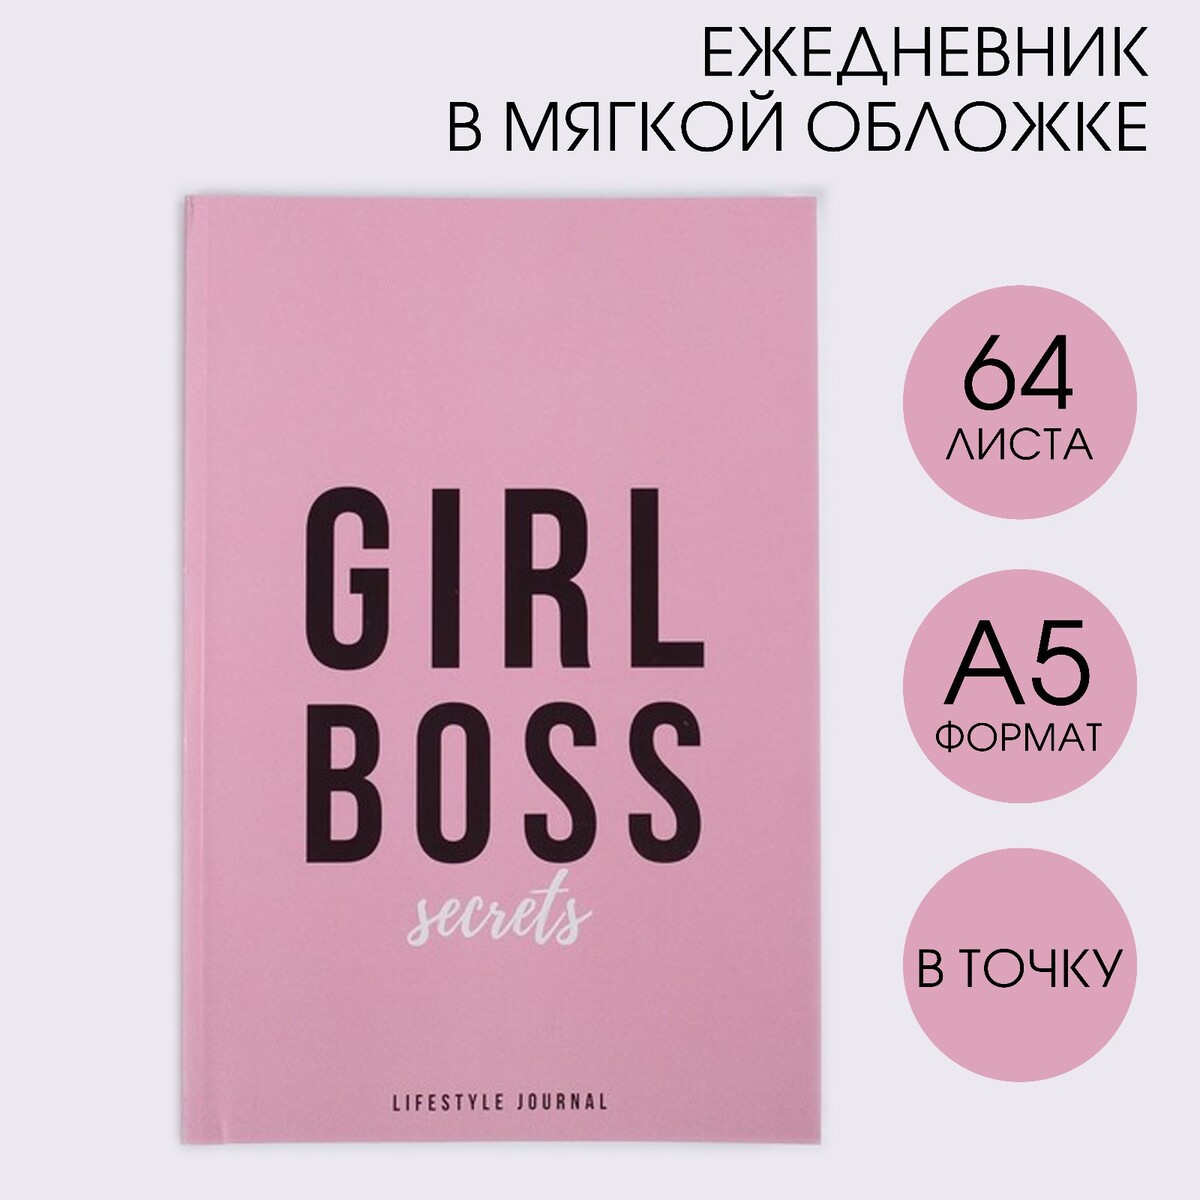    girl boss, 5, 64 